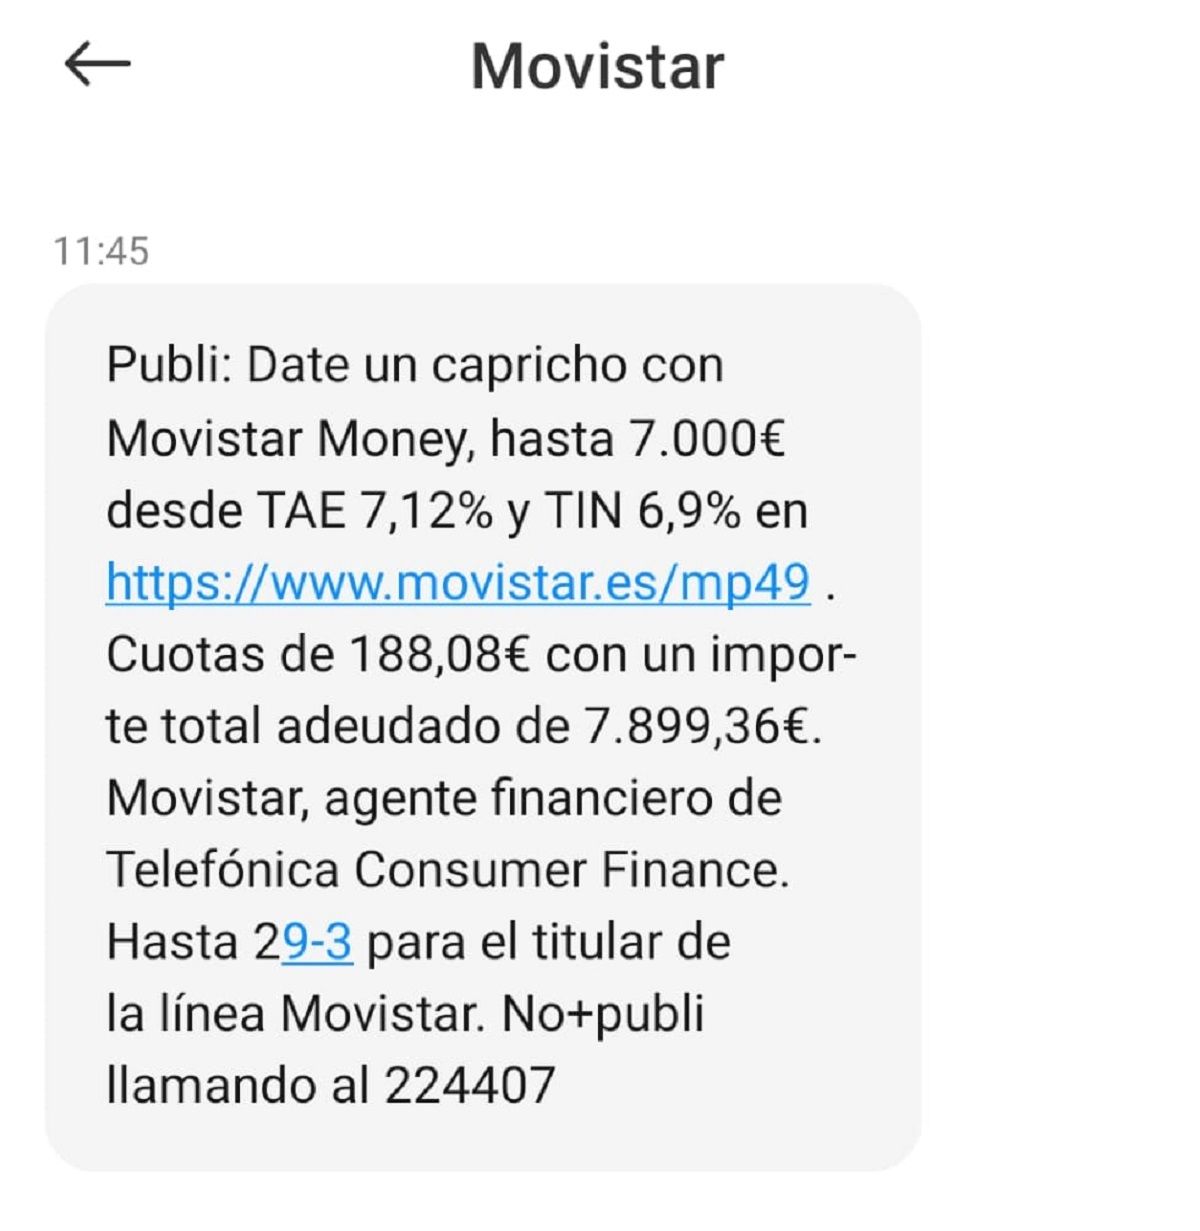 SMS de Movistar promocionando sus créditos Movistar Money / CG